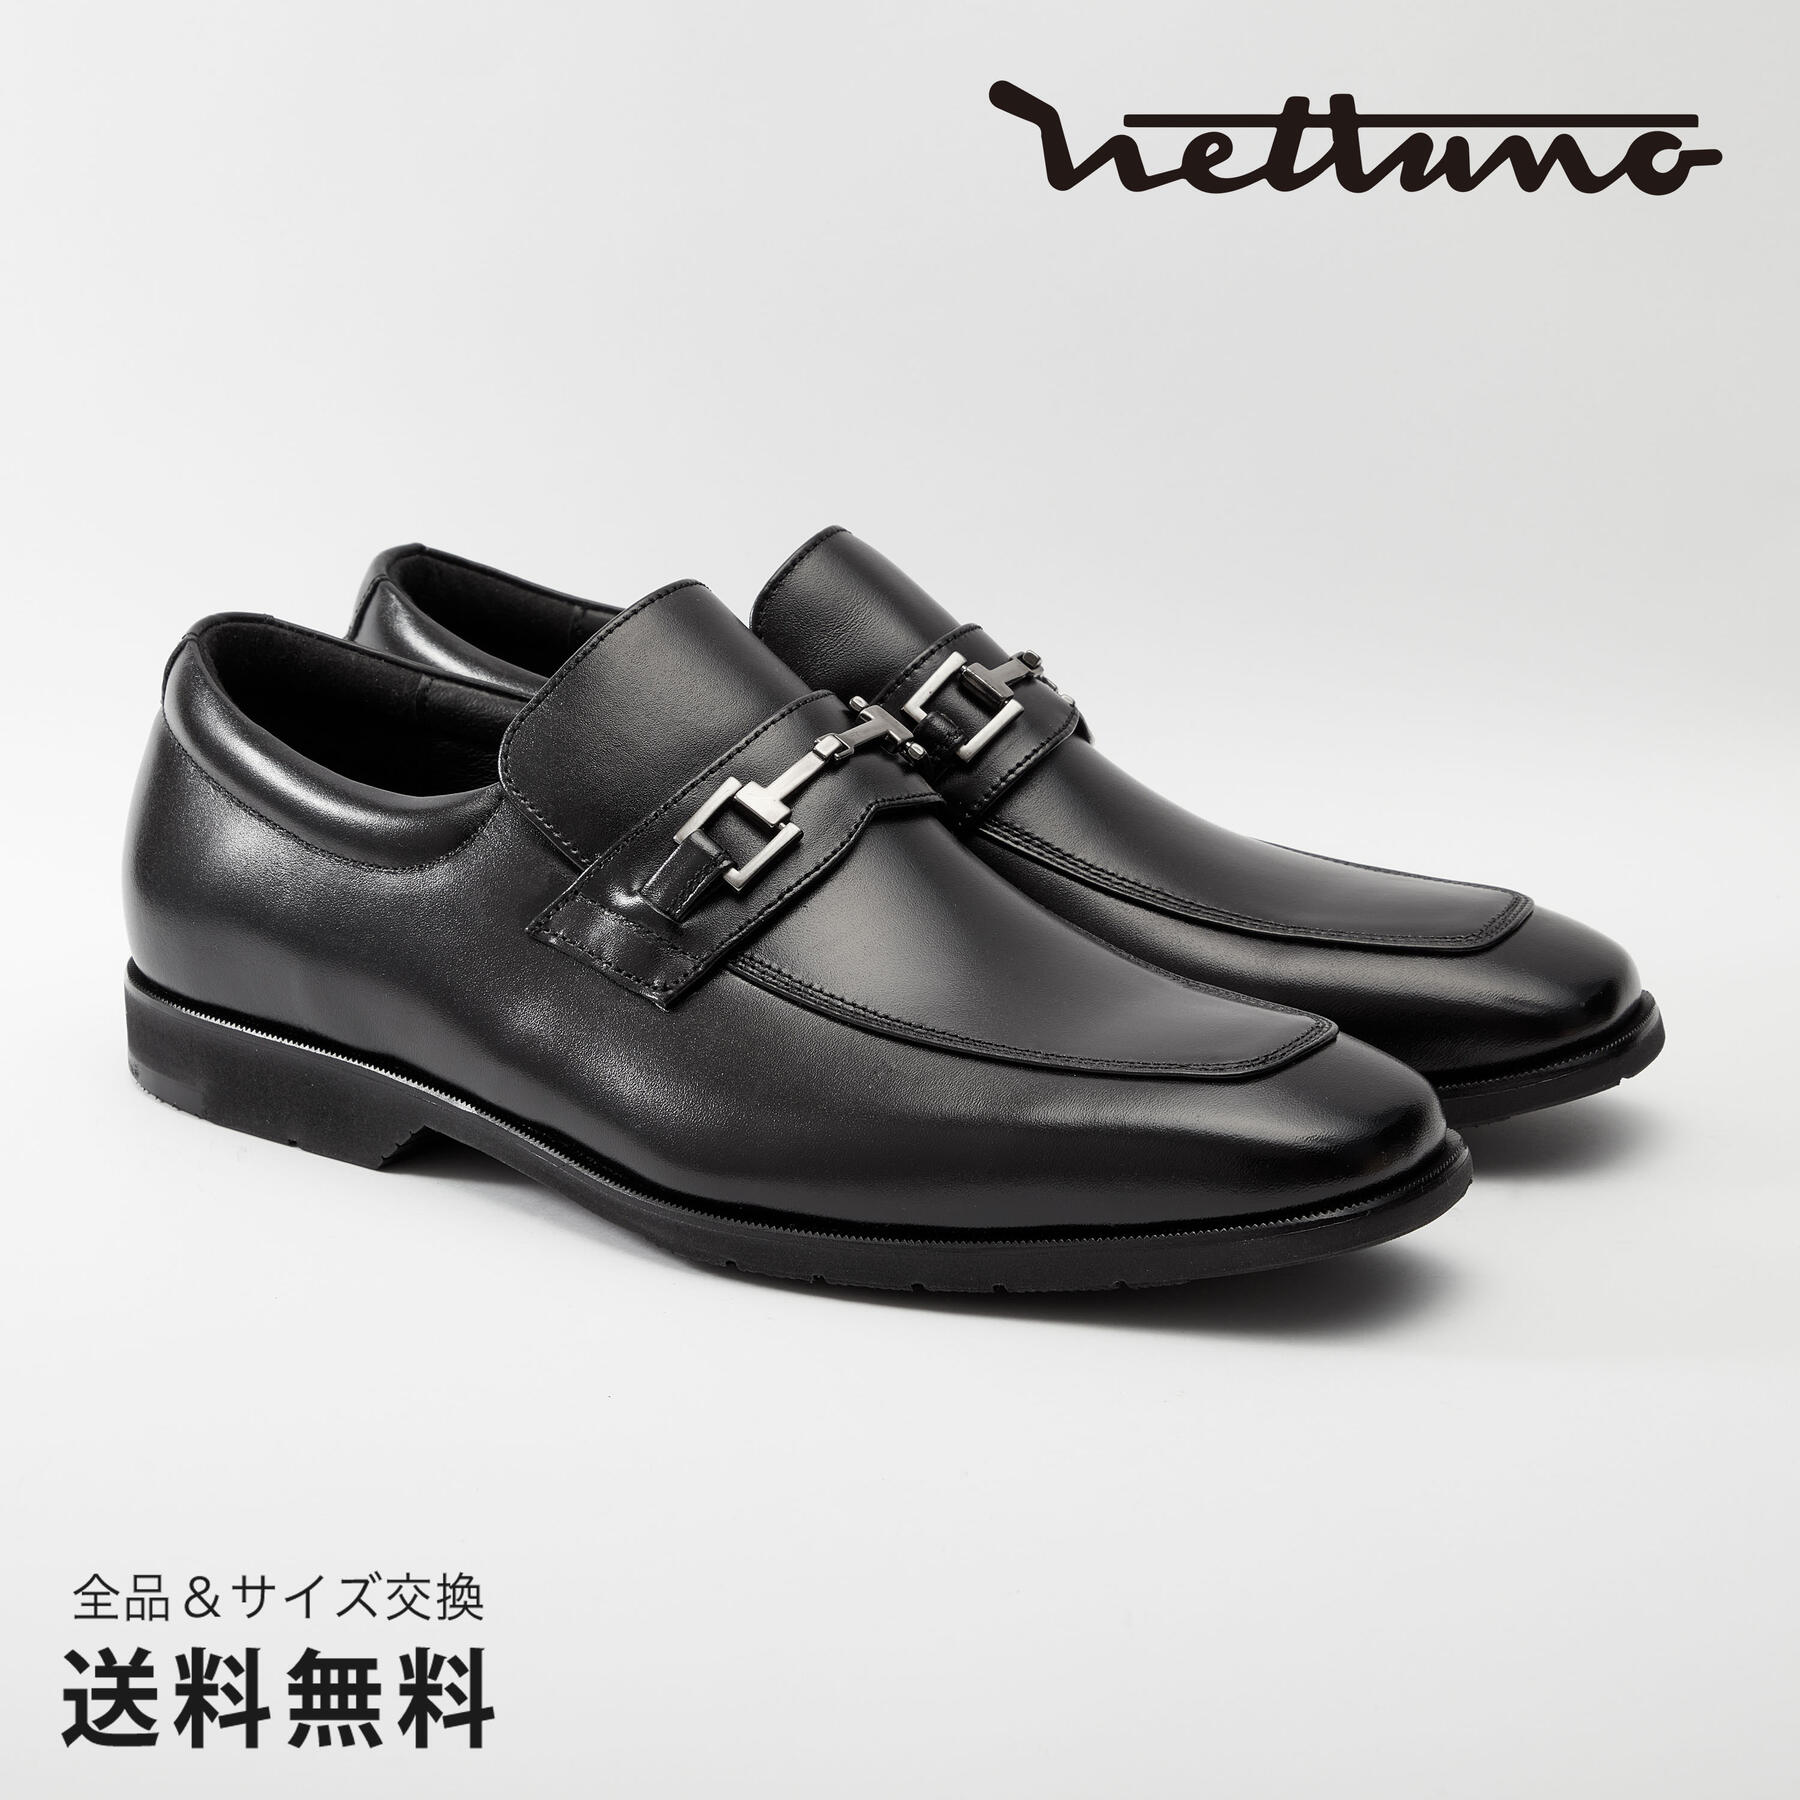 NETTUNO ネッツーノ ビットローファー 3E 革靴 防水キップレザー ラバーソール ブラック セメンテッド 黒 BLACK 64607 日本 靴 メンズ靴 ビジネスシューズ サイズ 24.0 - 27.0cm 